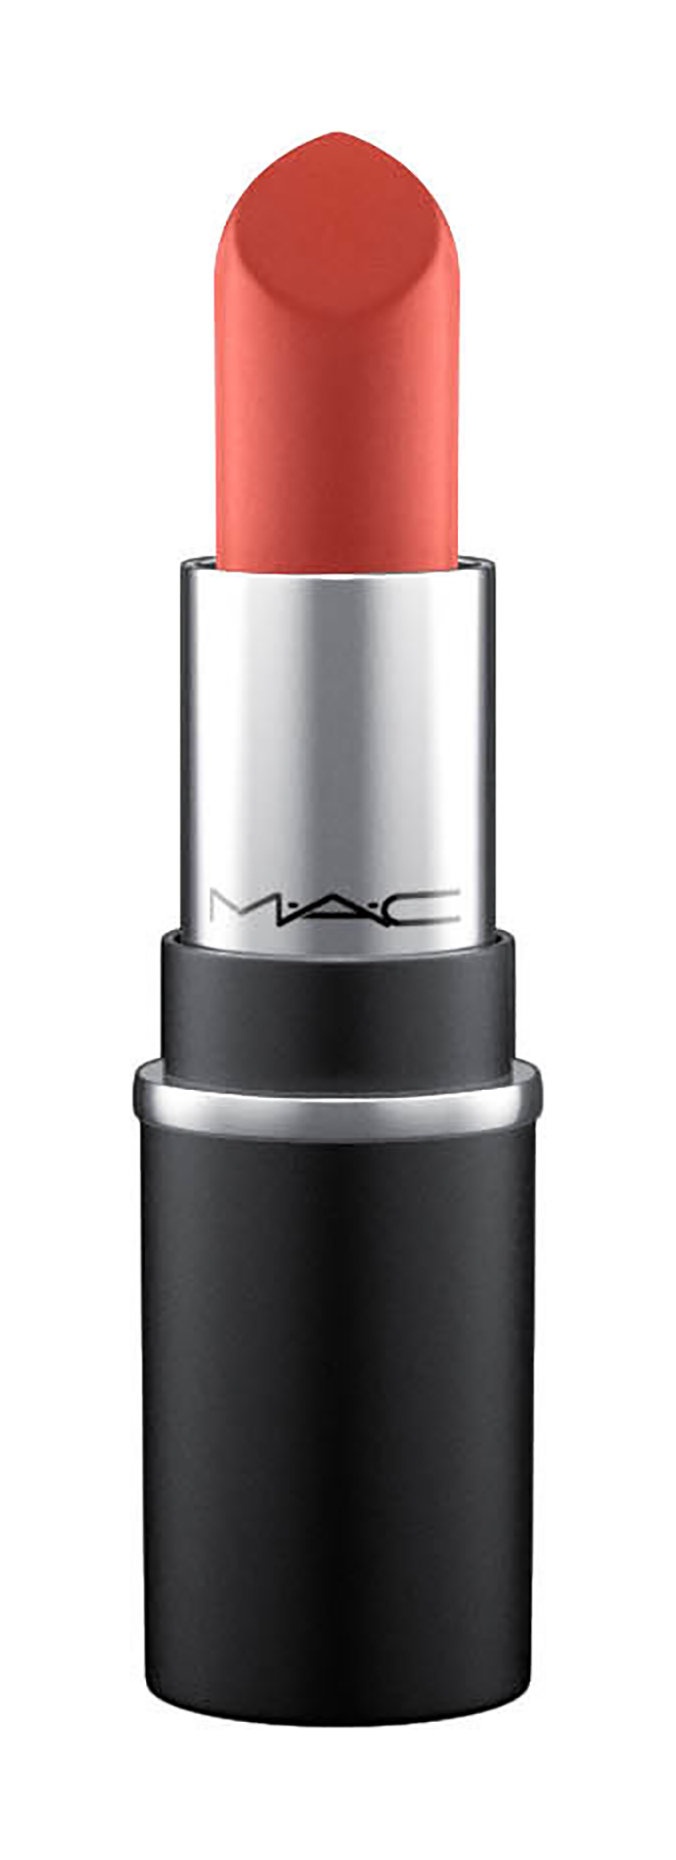 Помада MAC matte lipstick in chili 602